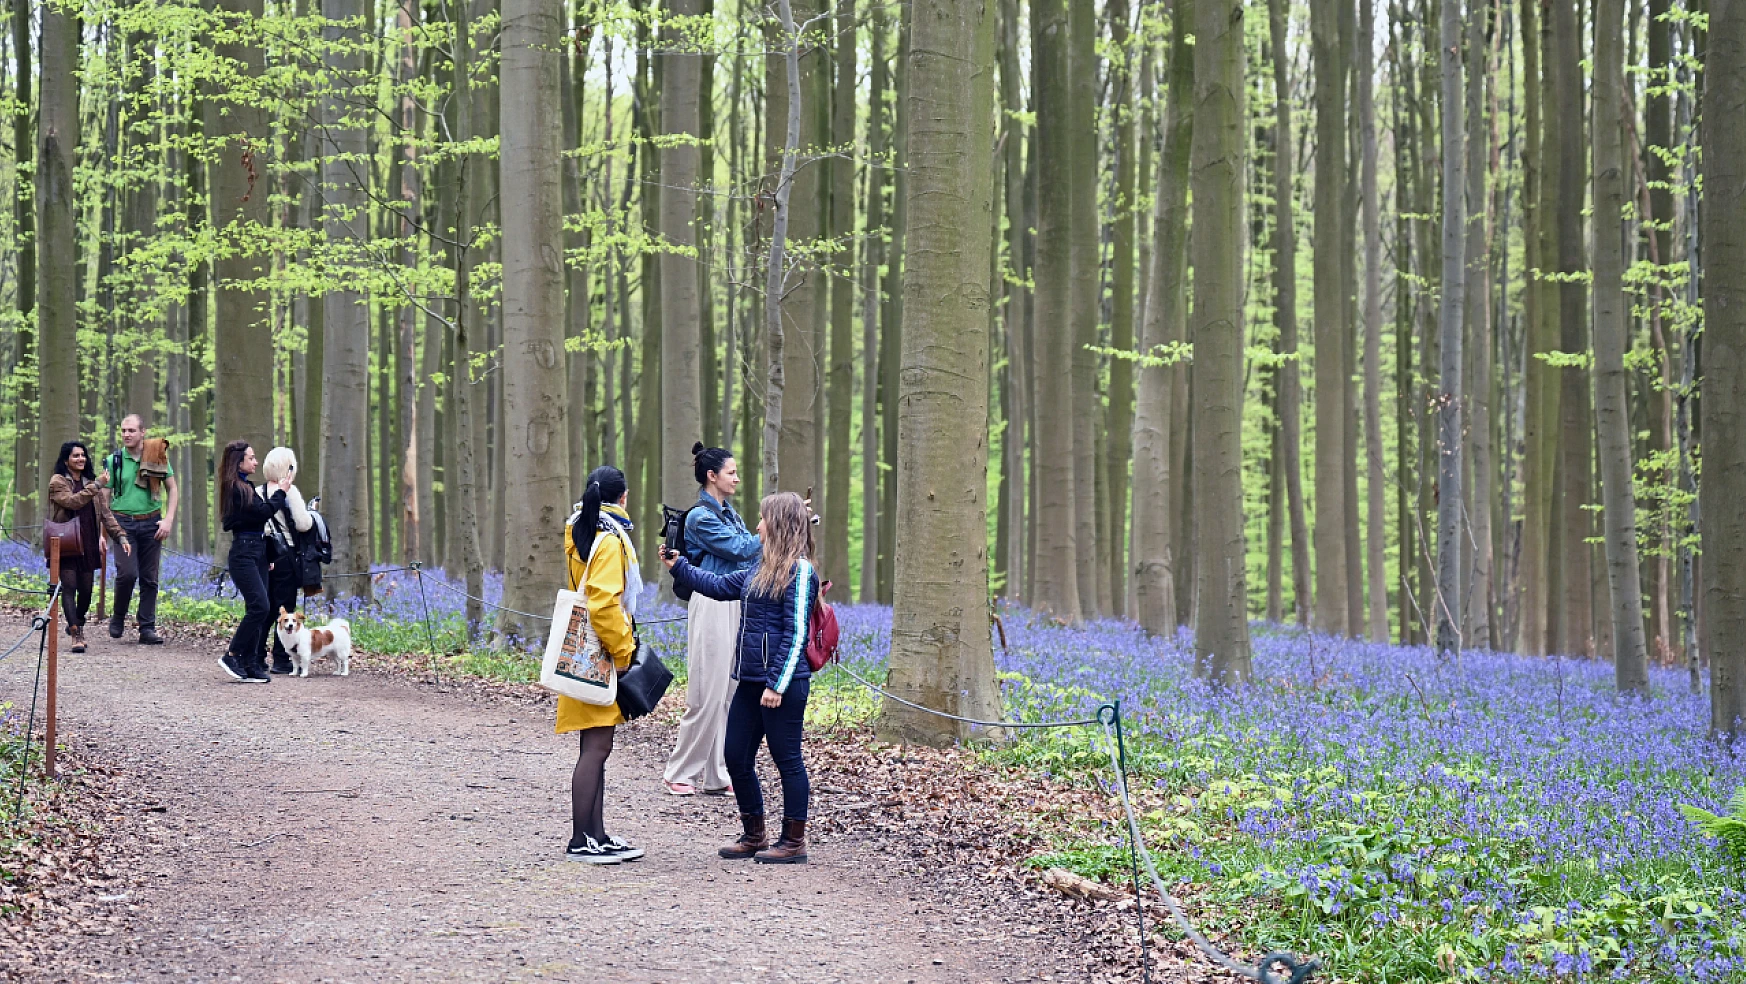 Belçika'nın Hallerbos Ormanı'nda çan çiçekleri baharı karşılıyor